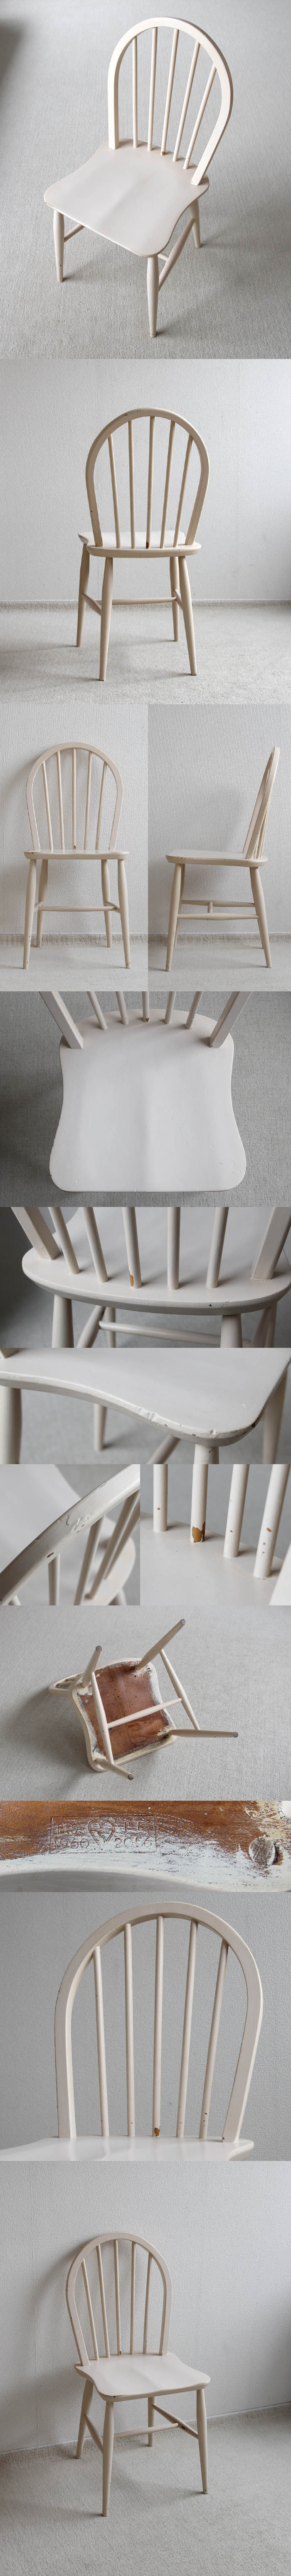 イギリス アンティーク アーコールチェア ERCOL 木製椅子 シャビー ペイント家具「フープバック」P-021